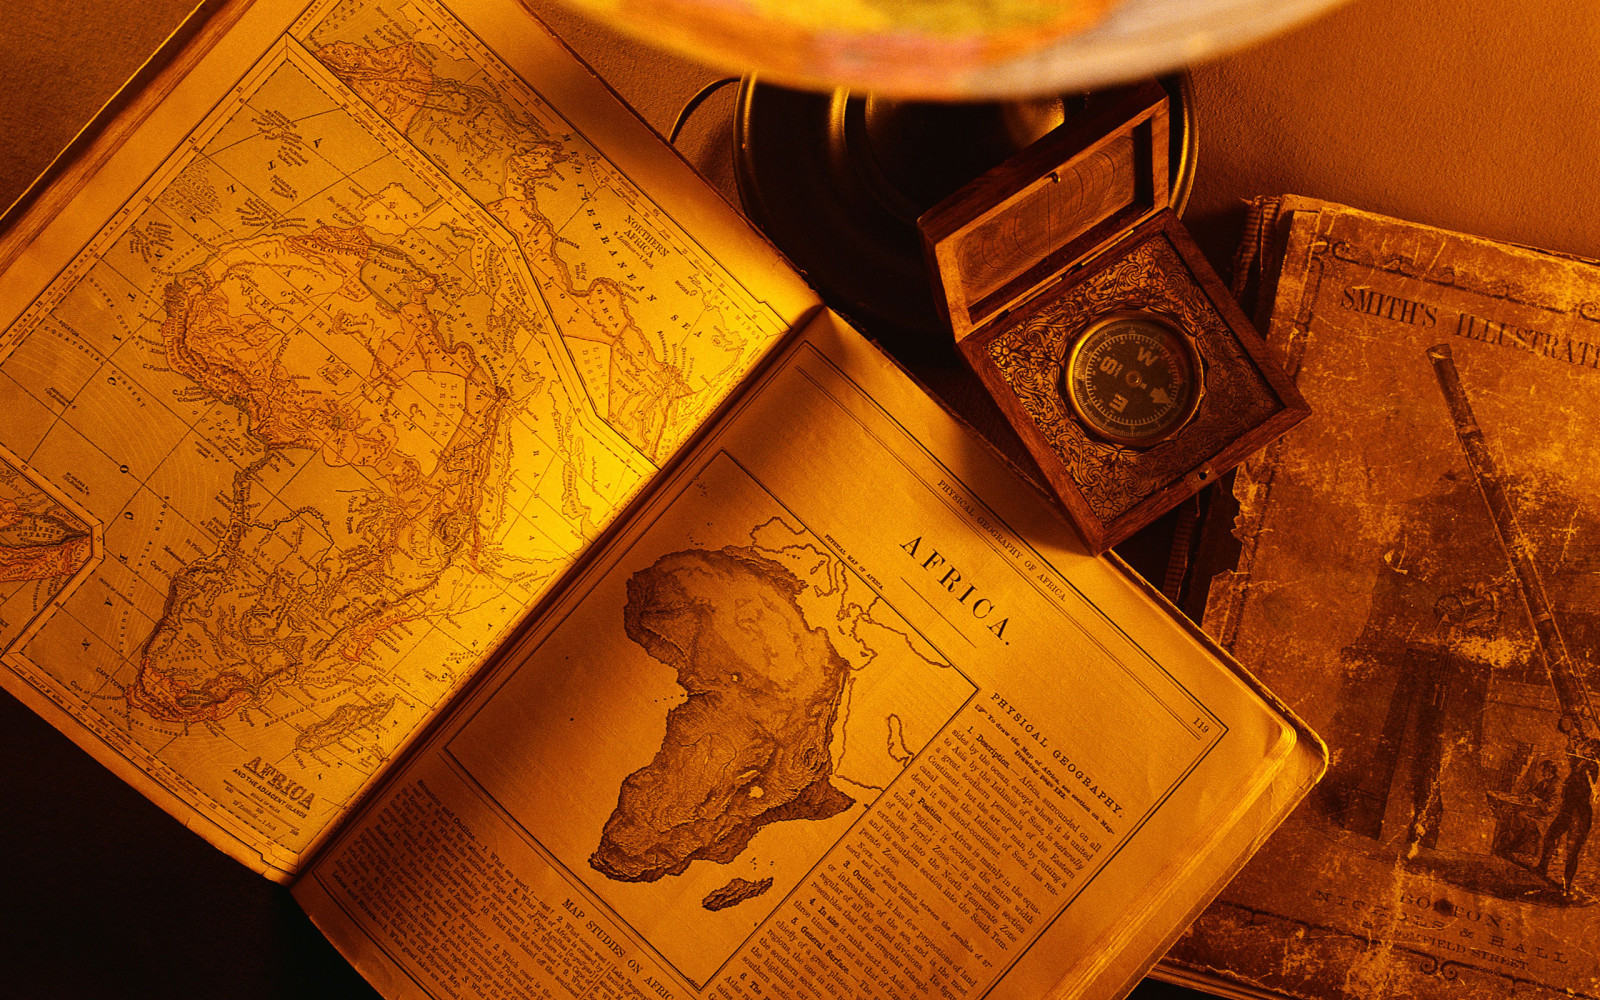 buku, kertas, tua, benua afrika